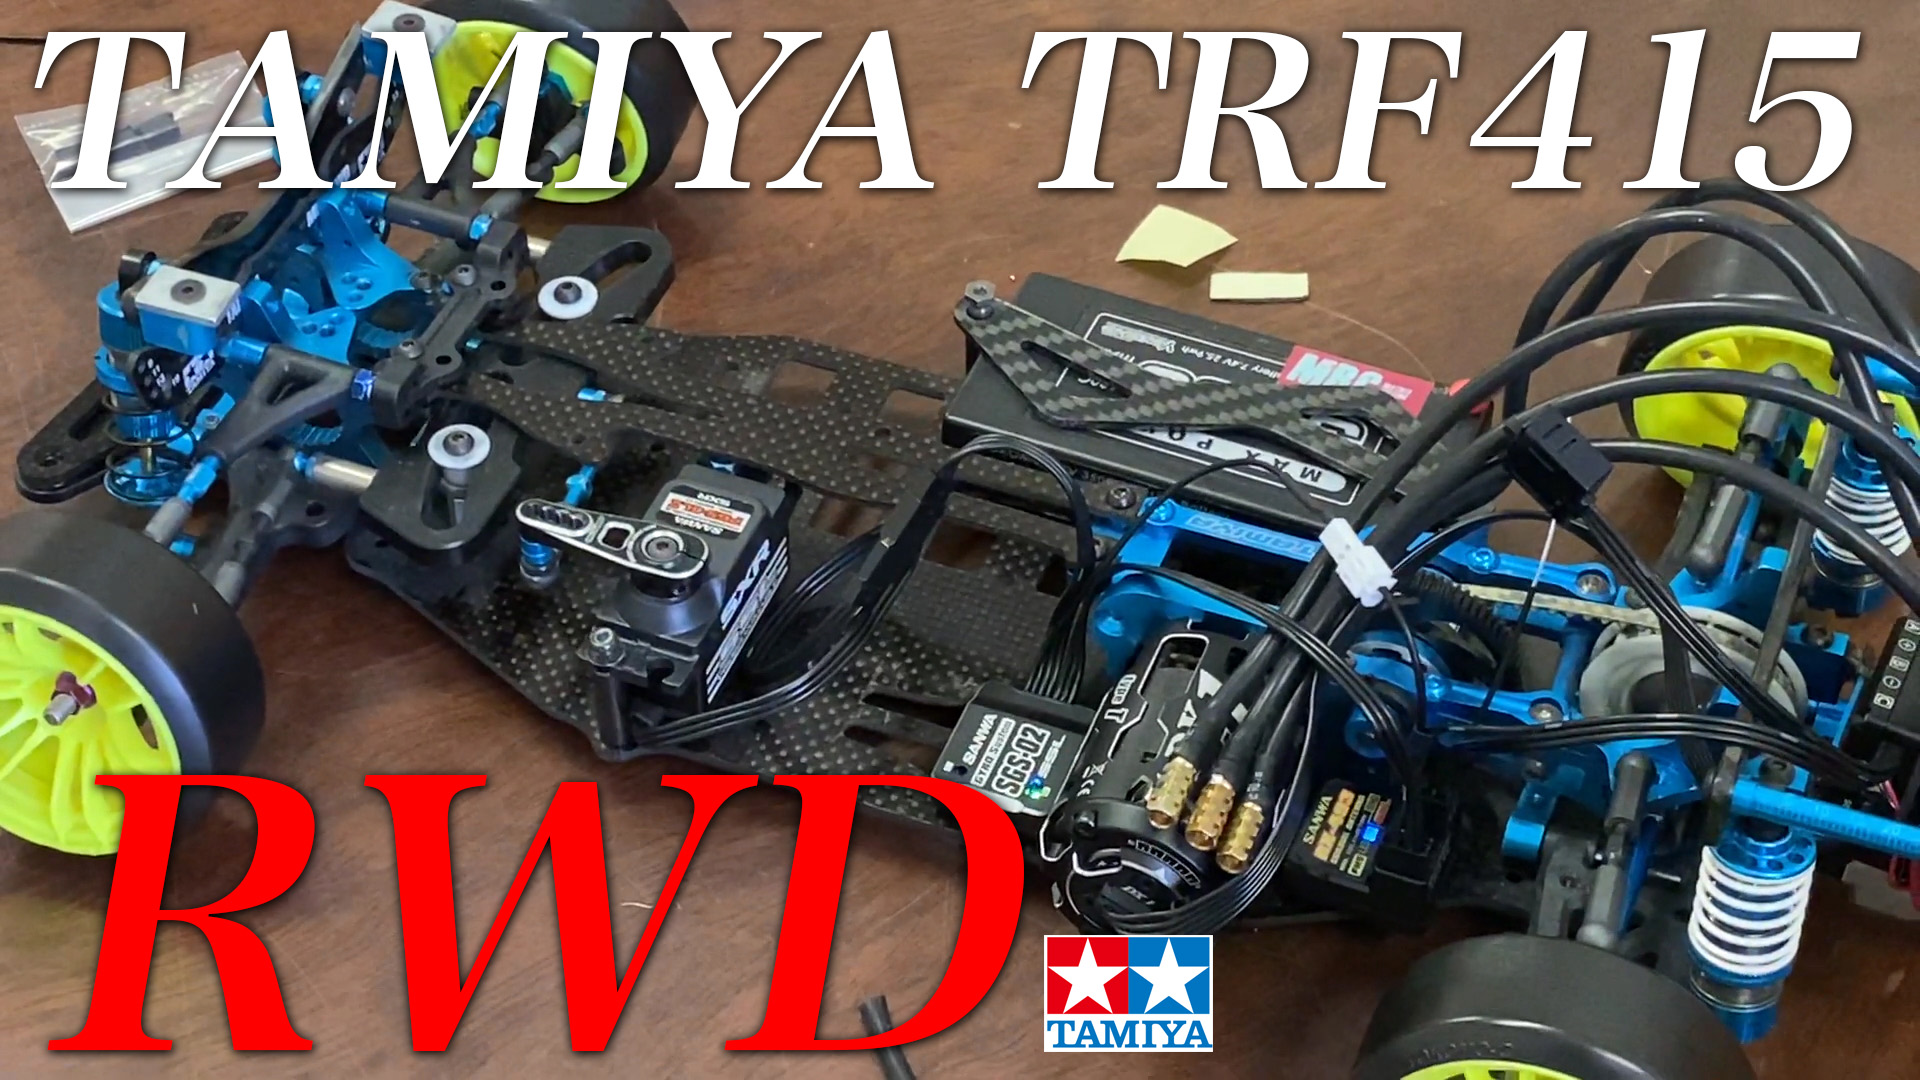 TAMIYA TRF415 RWD 最強マシンプロジェクト！M17フルサンワ搭載 